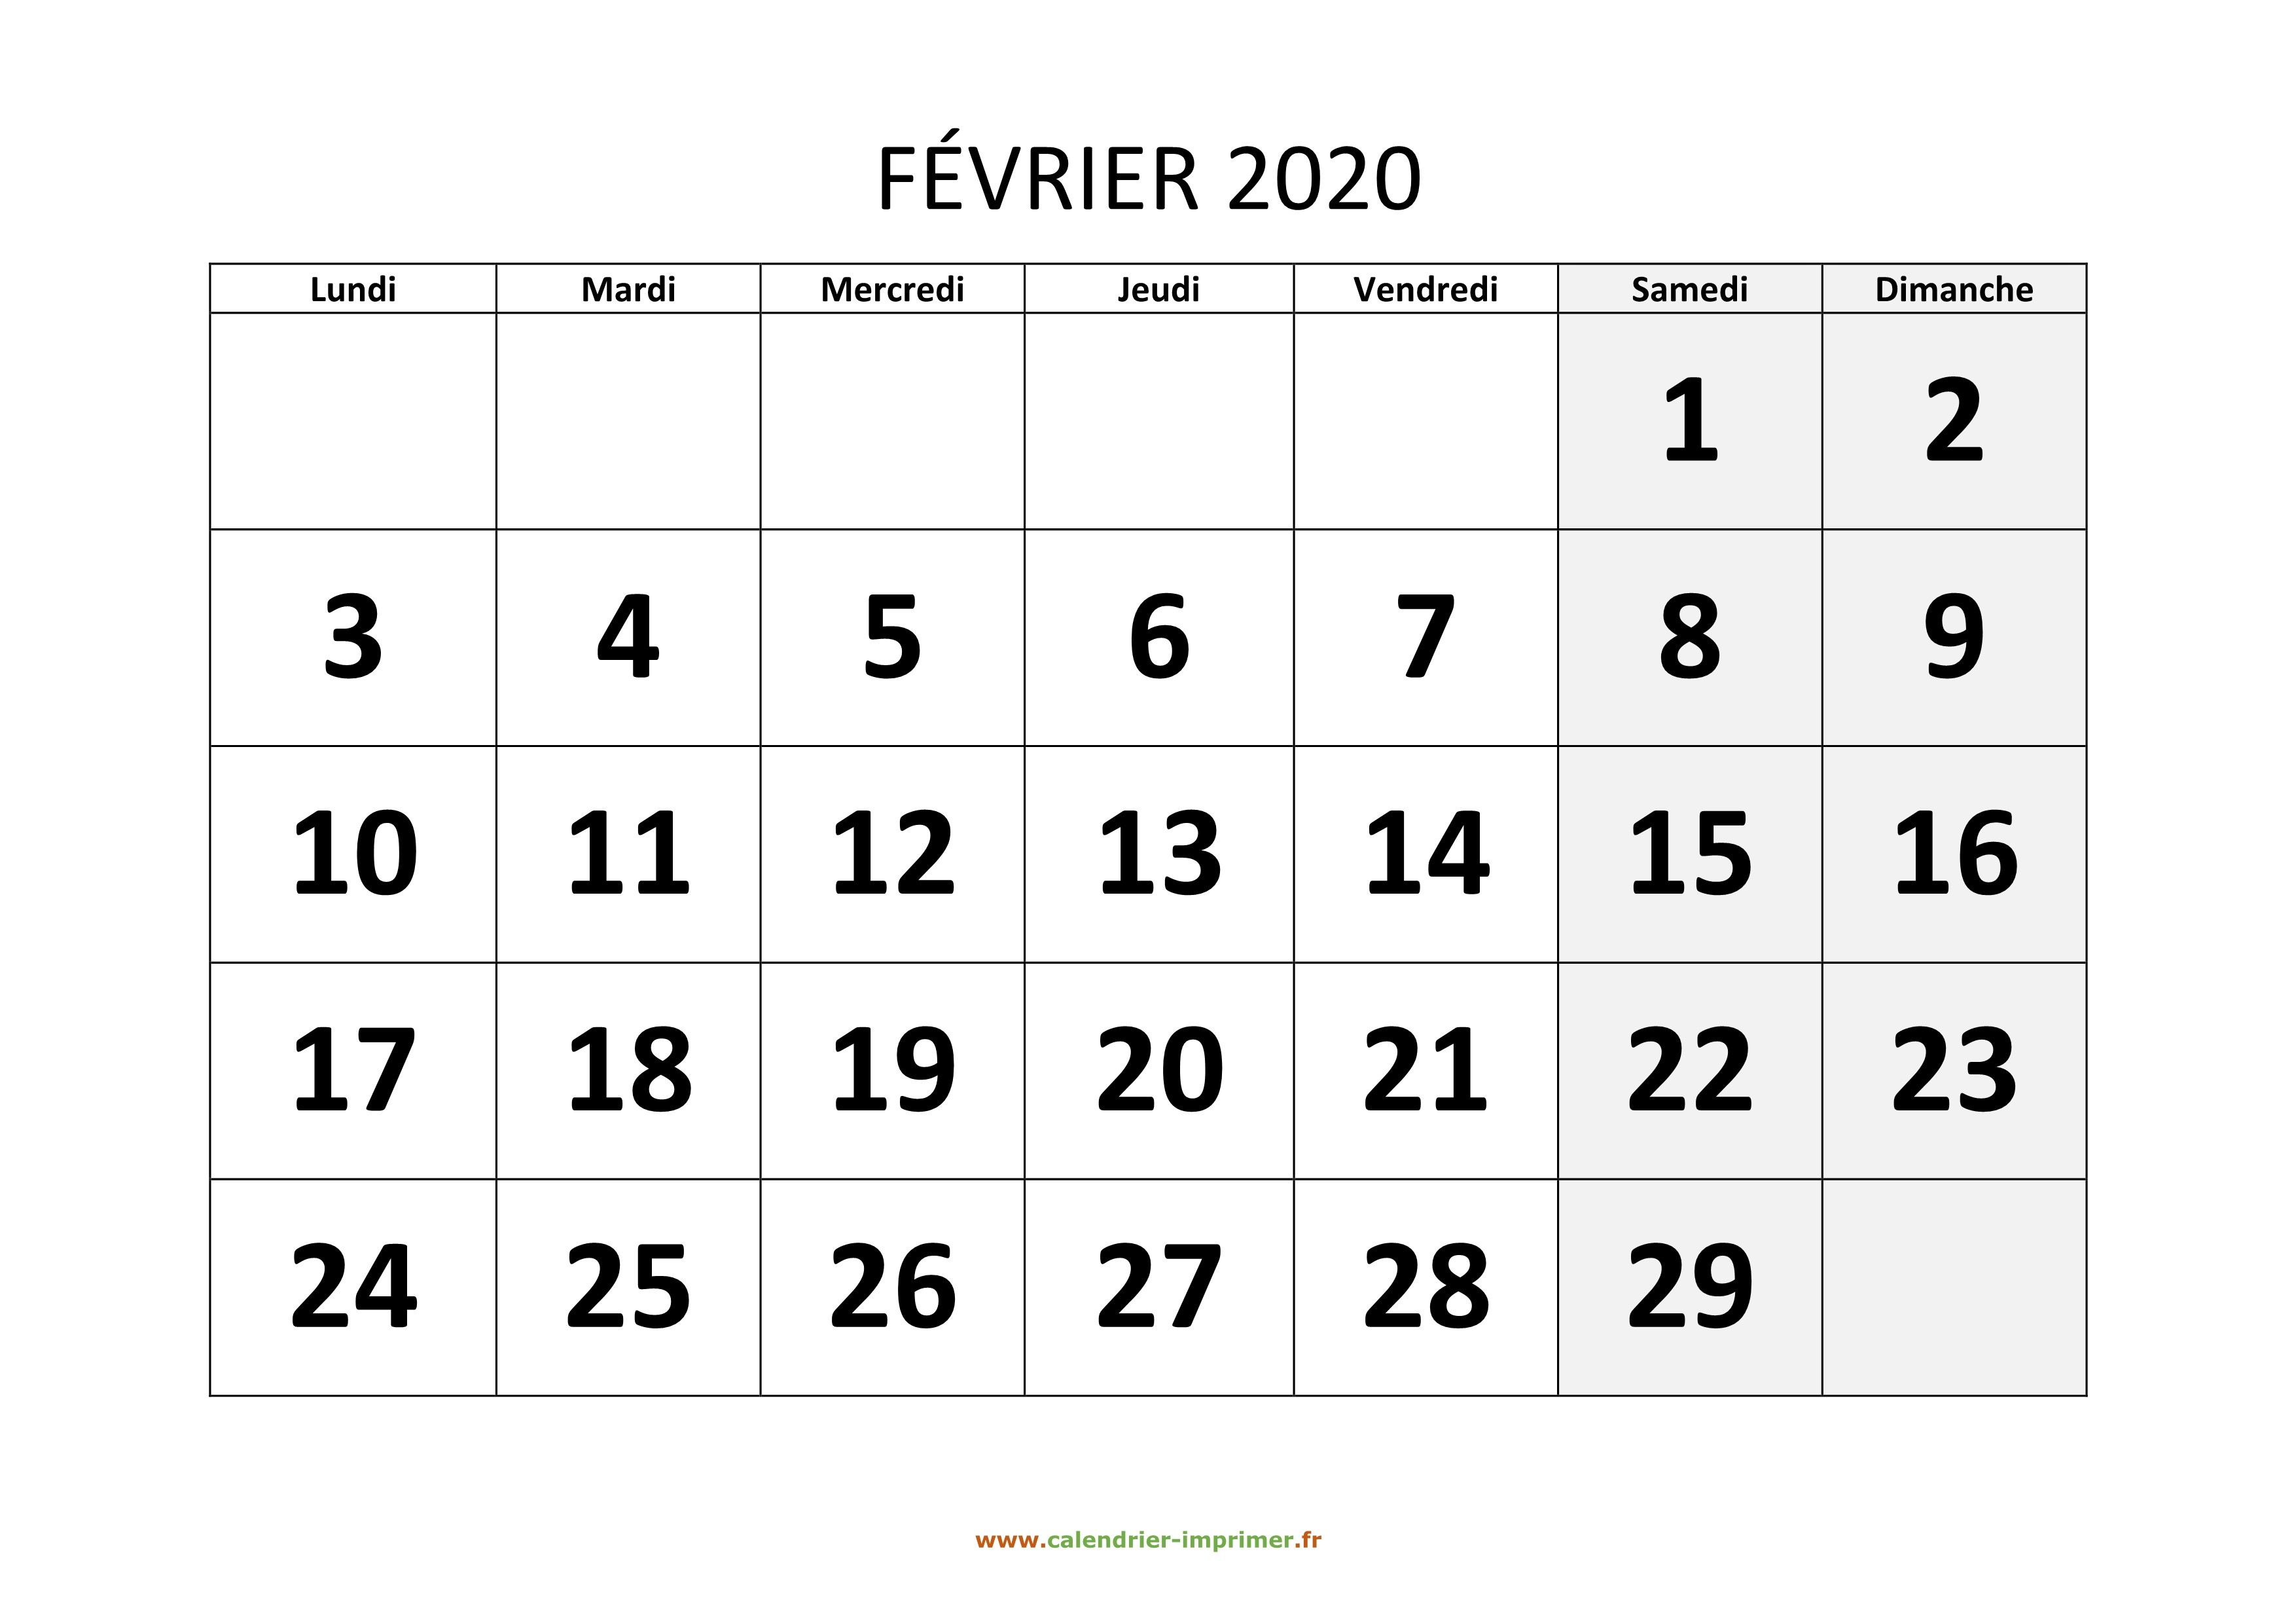 Calendrier Hiver 2019-2020 - Février 2020